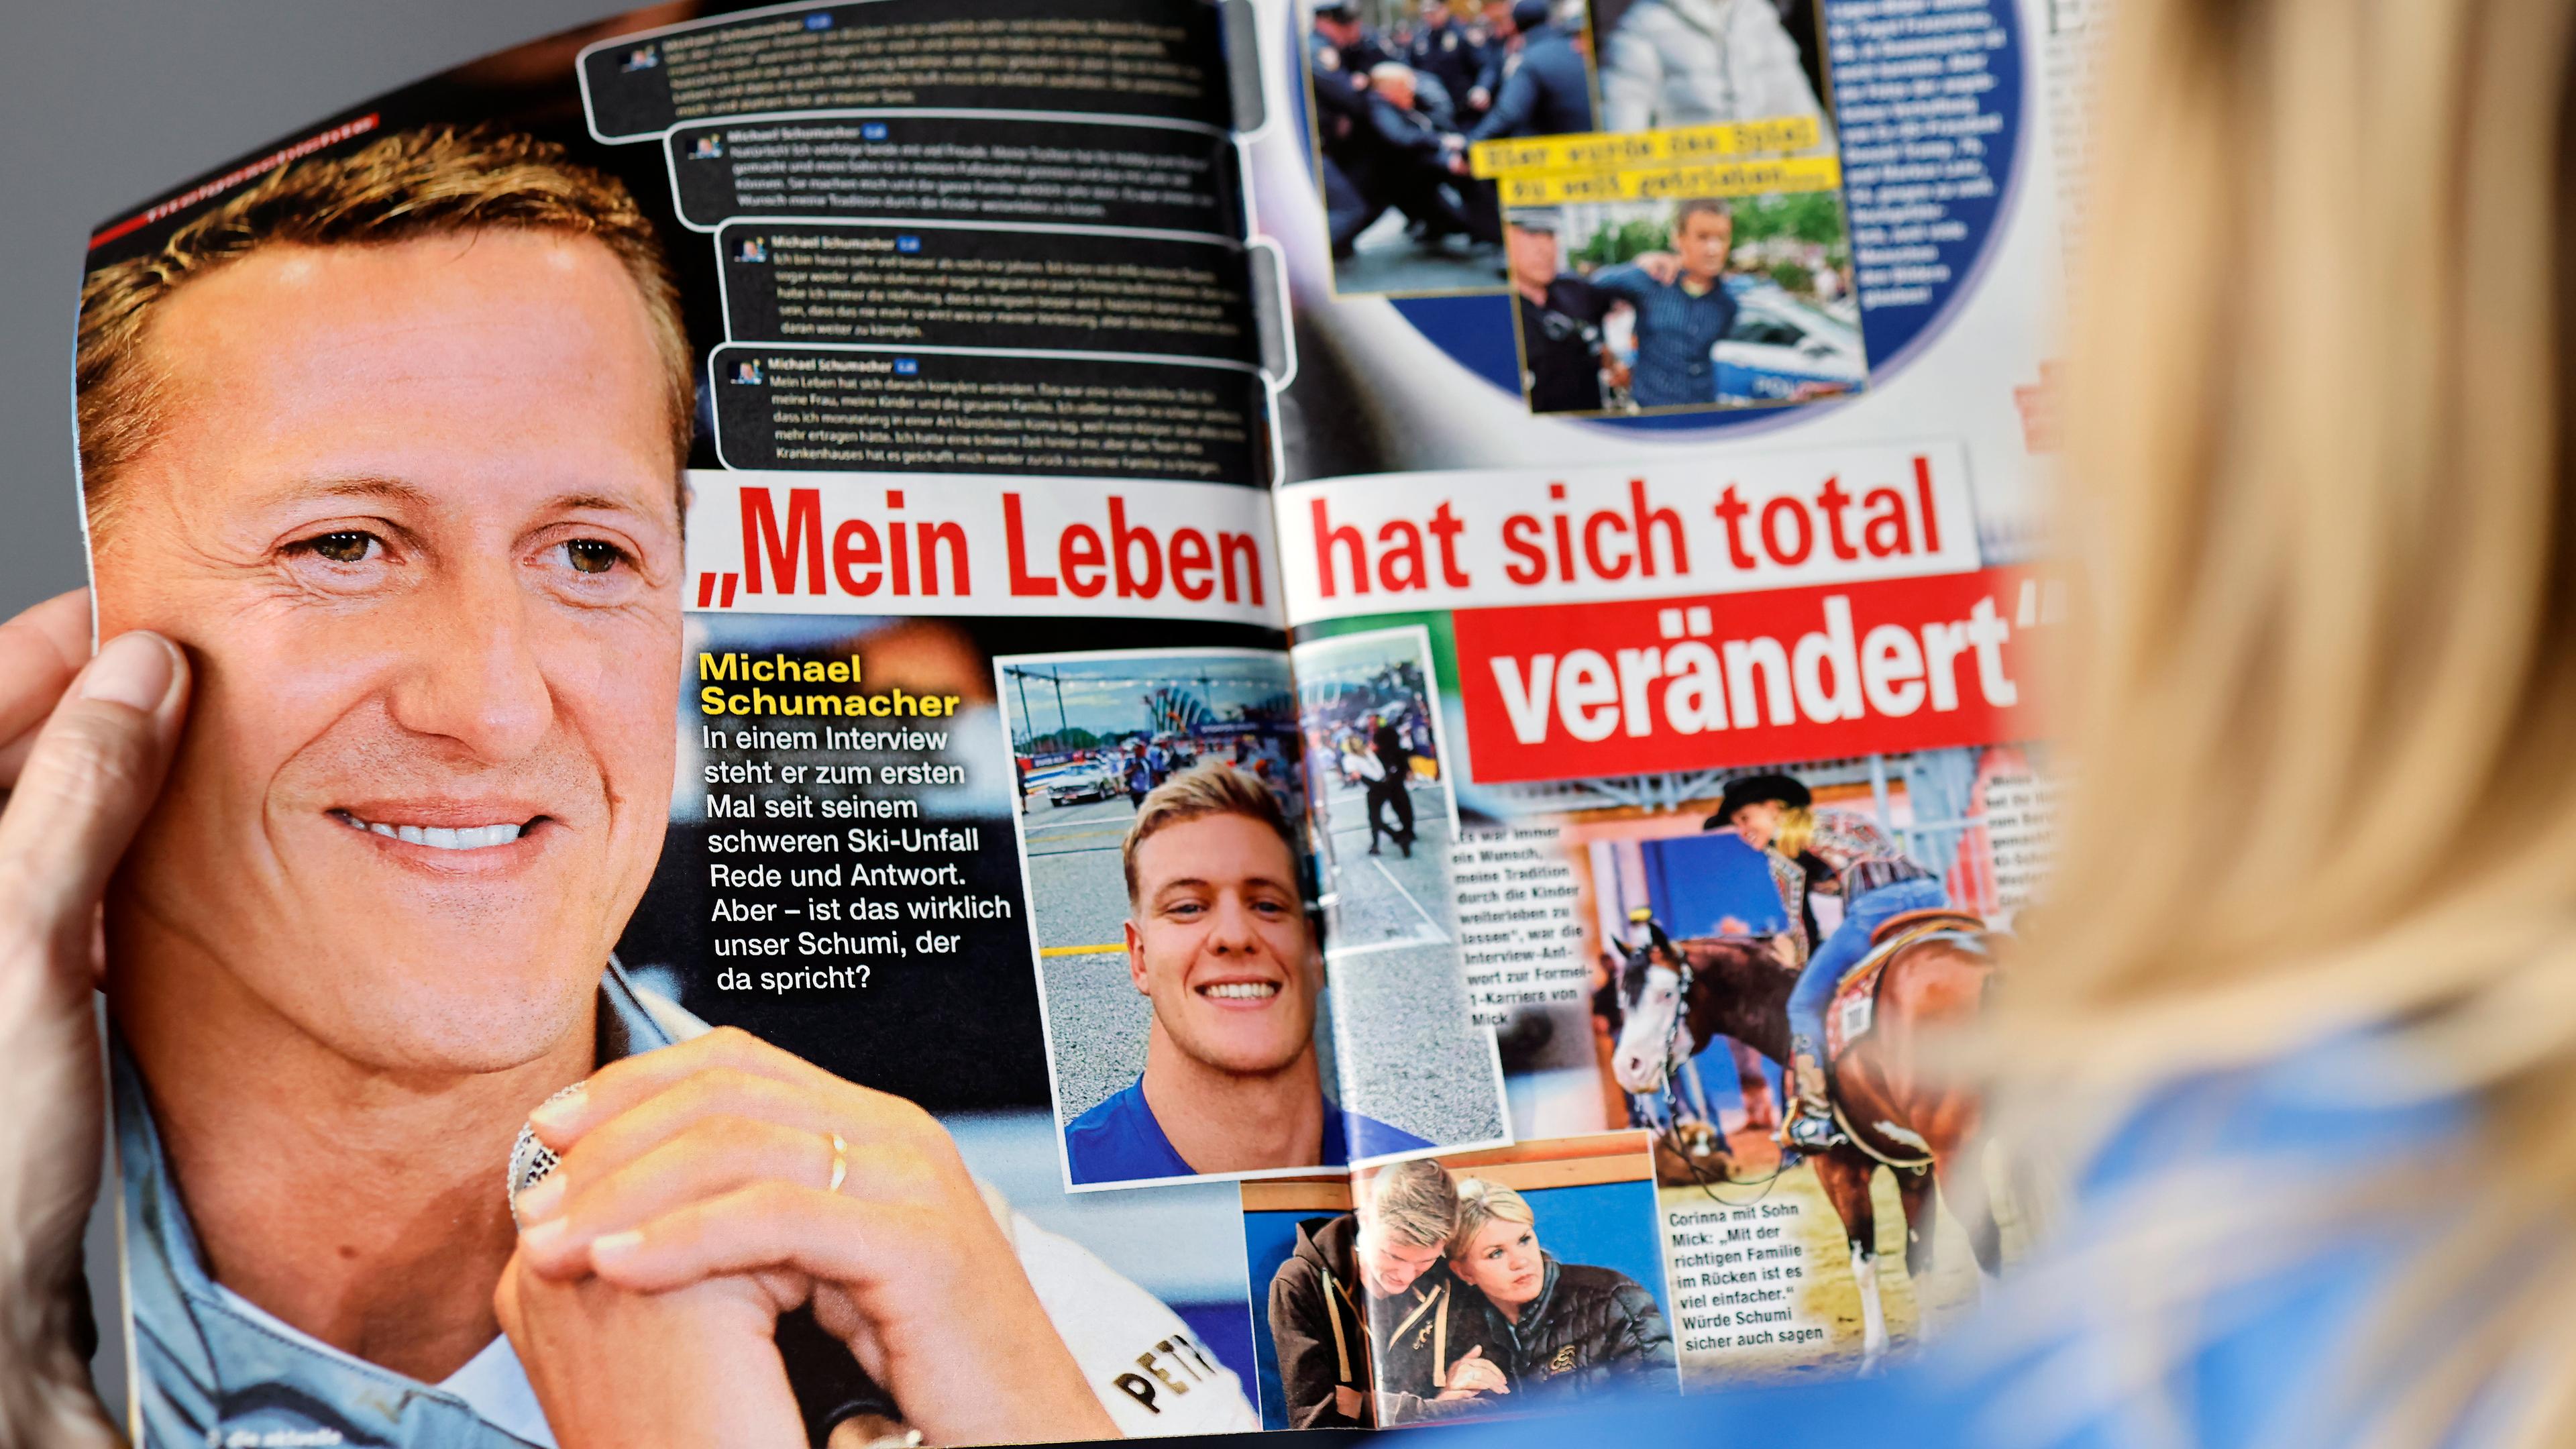 Eine Frau liest das erfundene Interview mit Michael Schumacher in "die aktuelle".